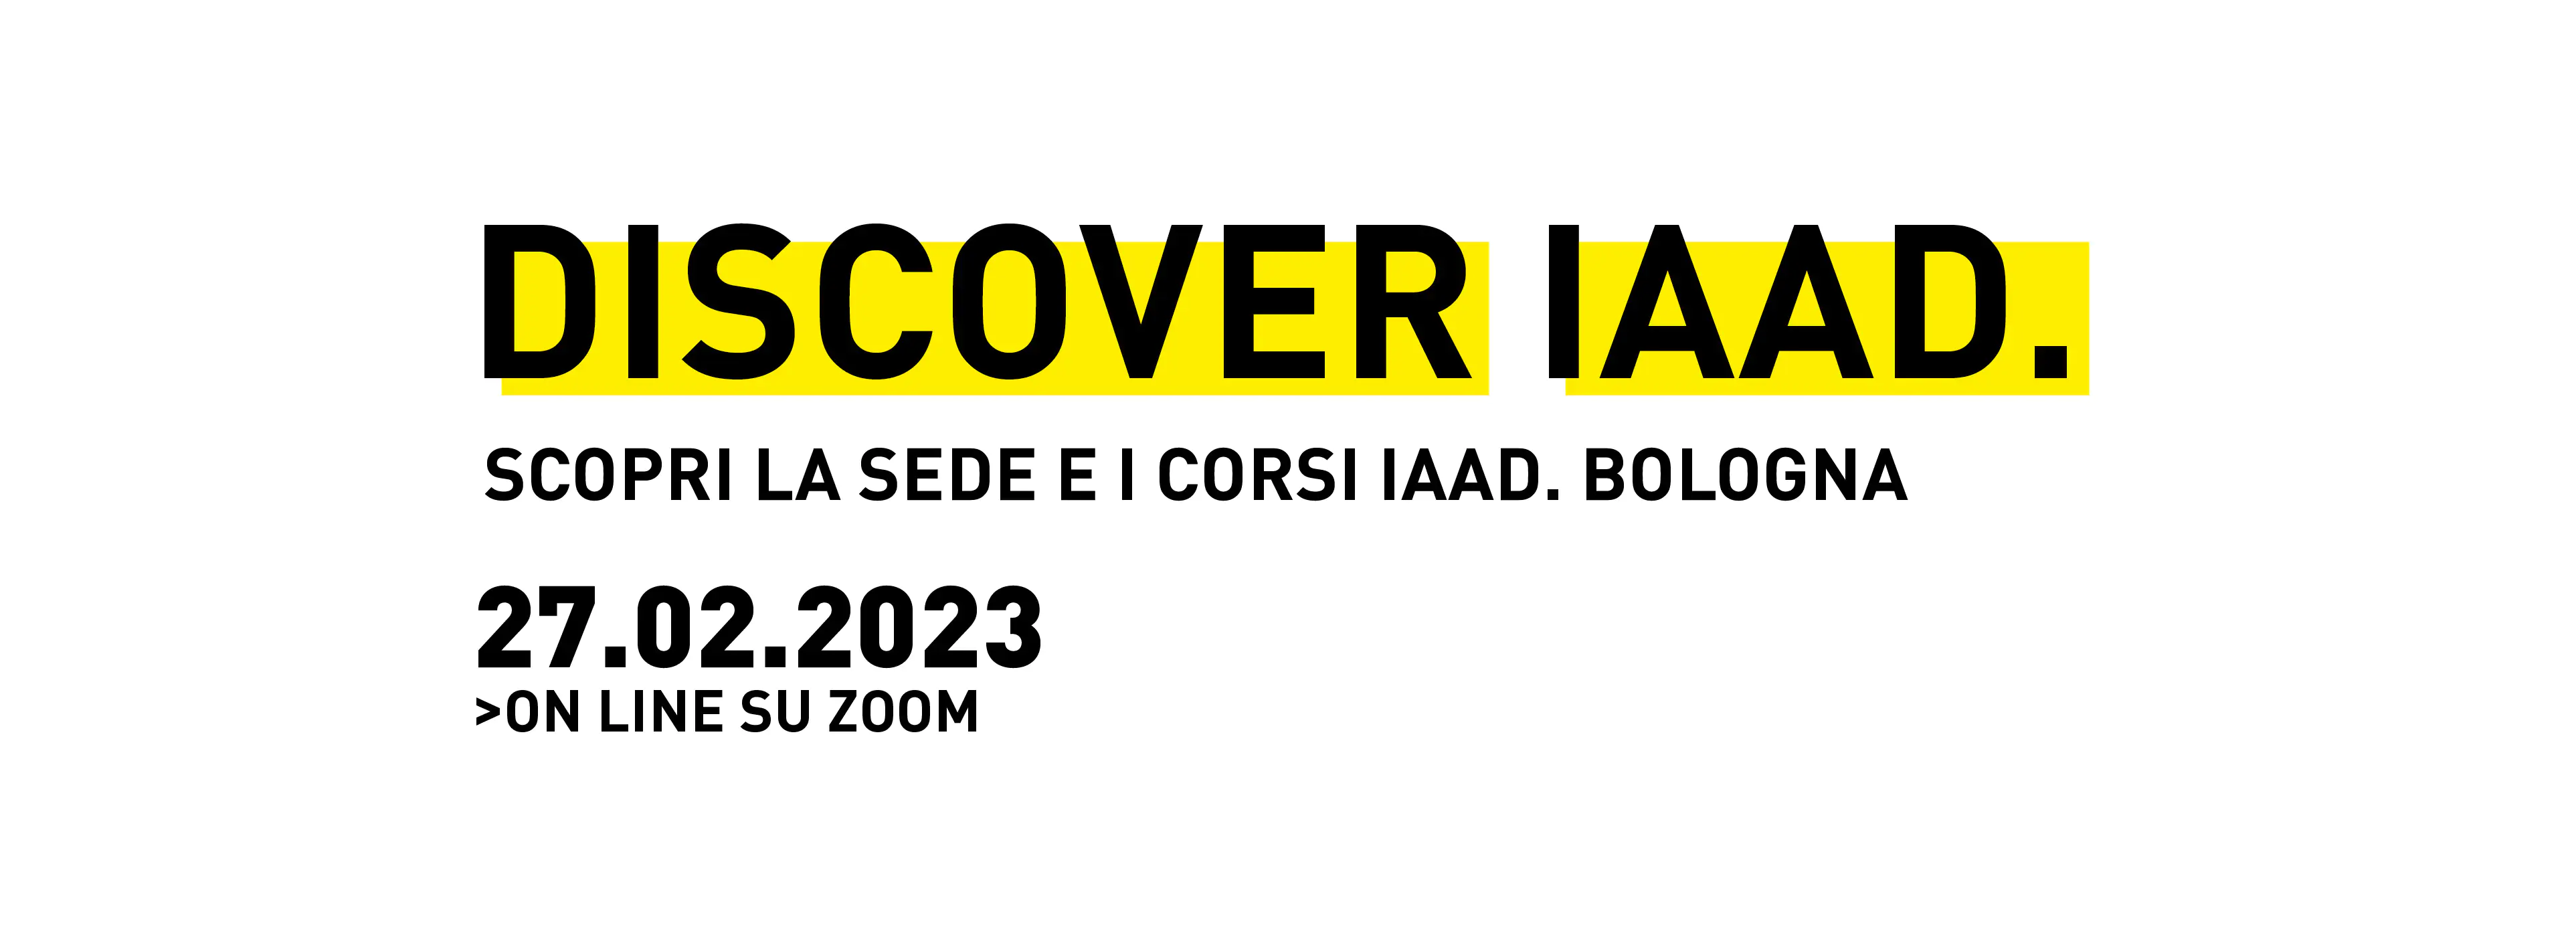 Discover IAAD. è l'evento di presentazione dell'offerta formativa di IAAD. Bologna